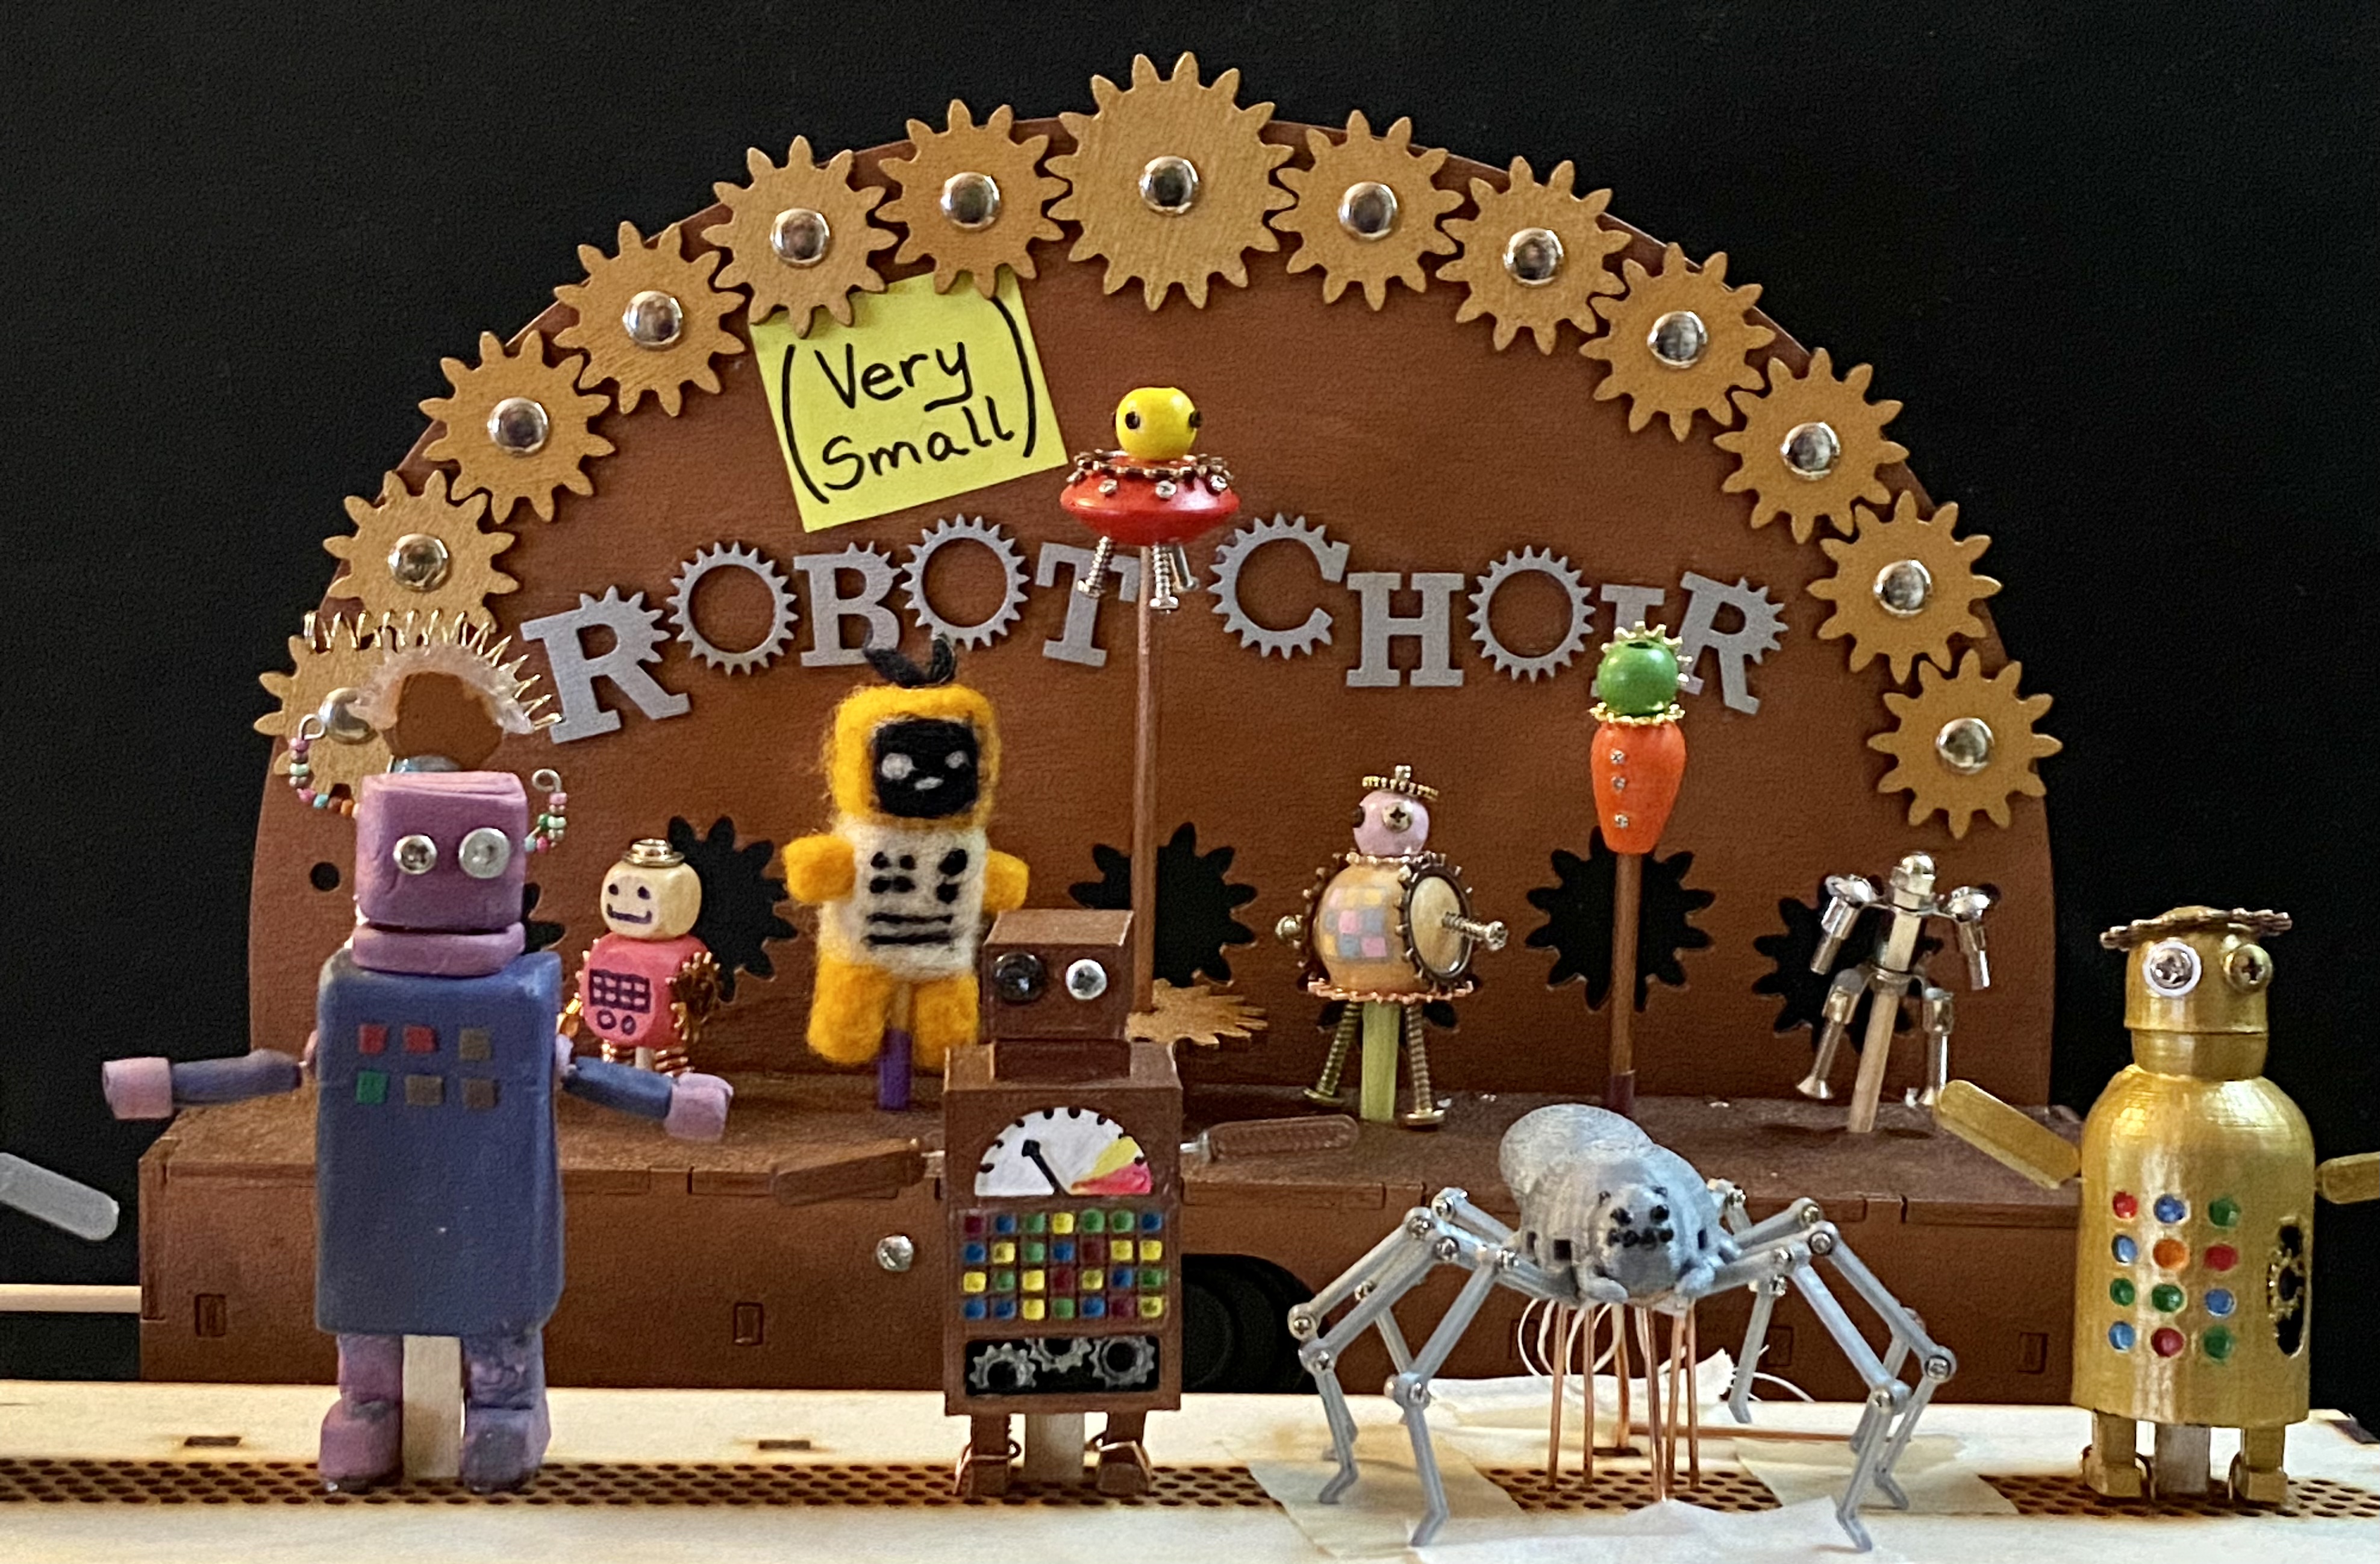 (Very Small) Robot Choir